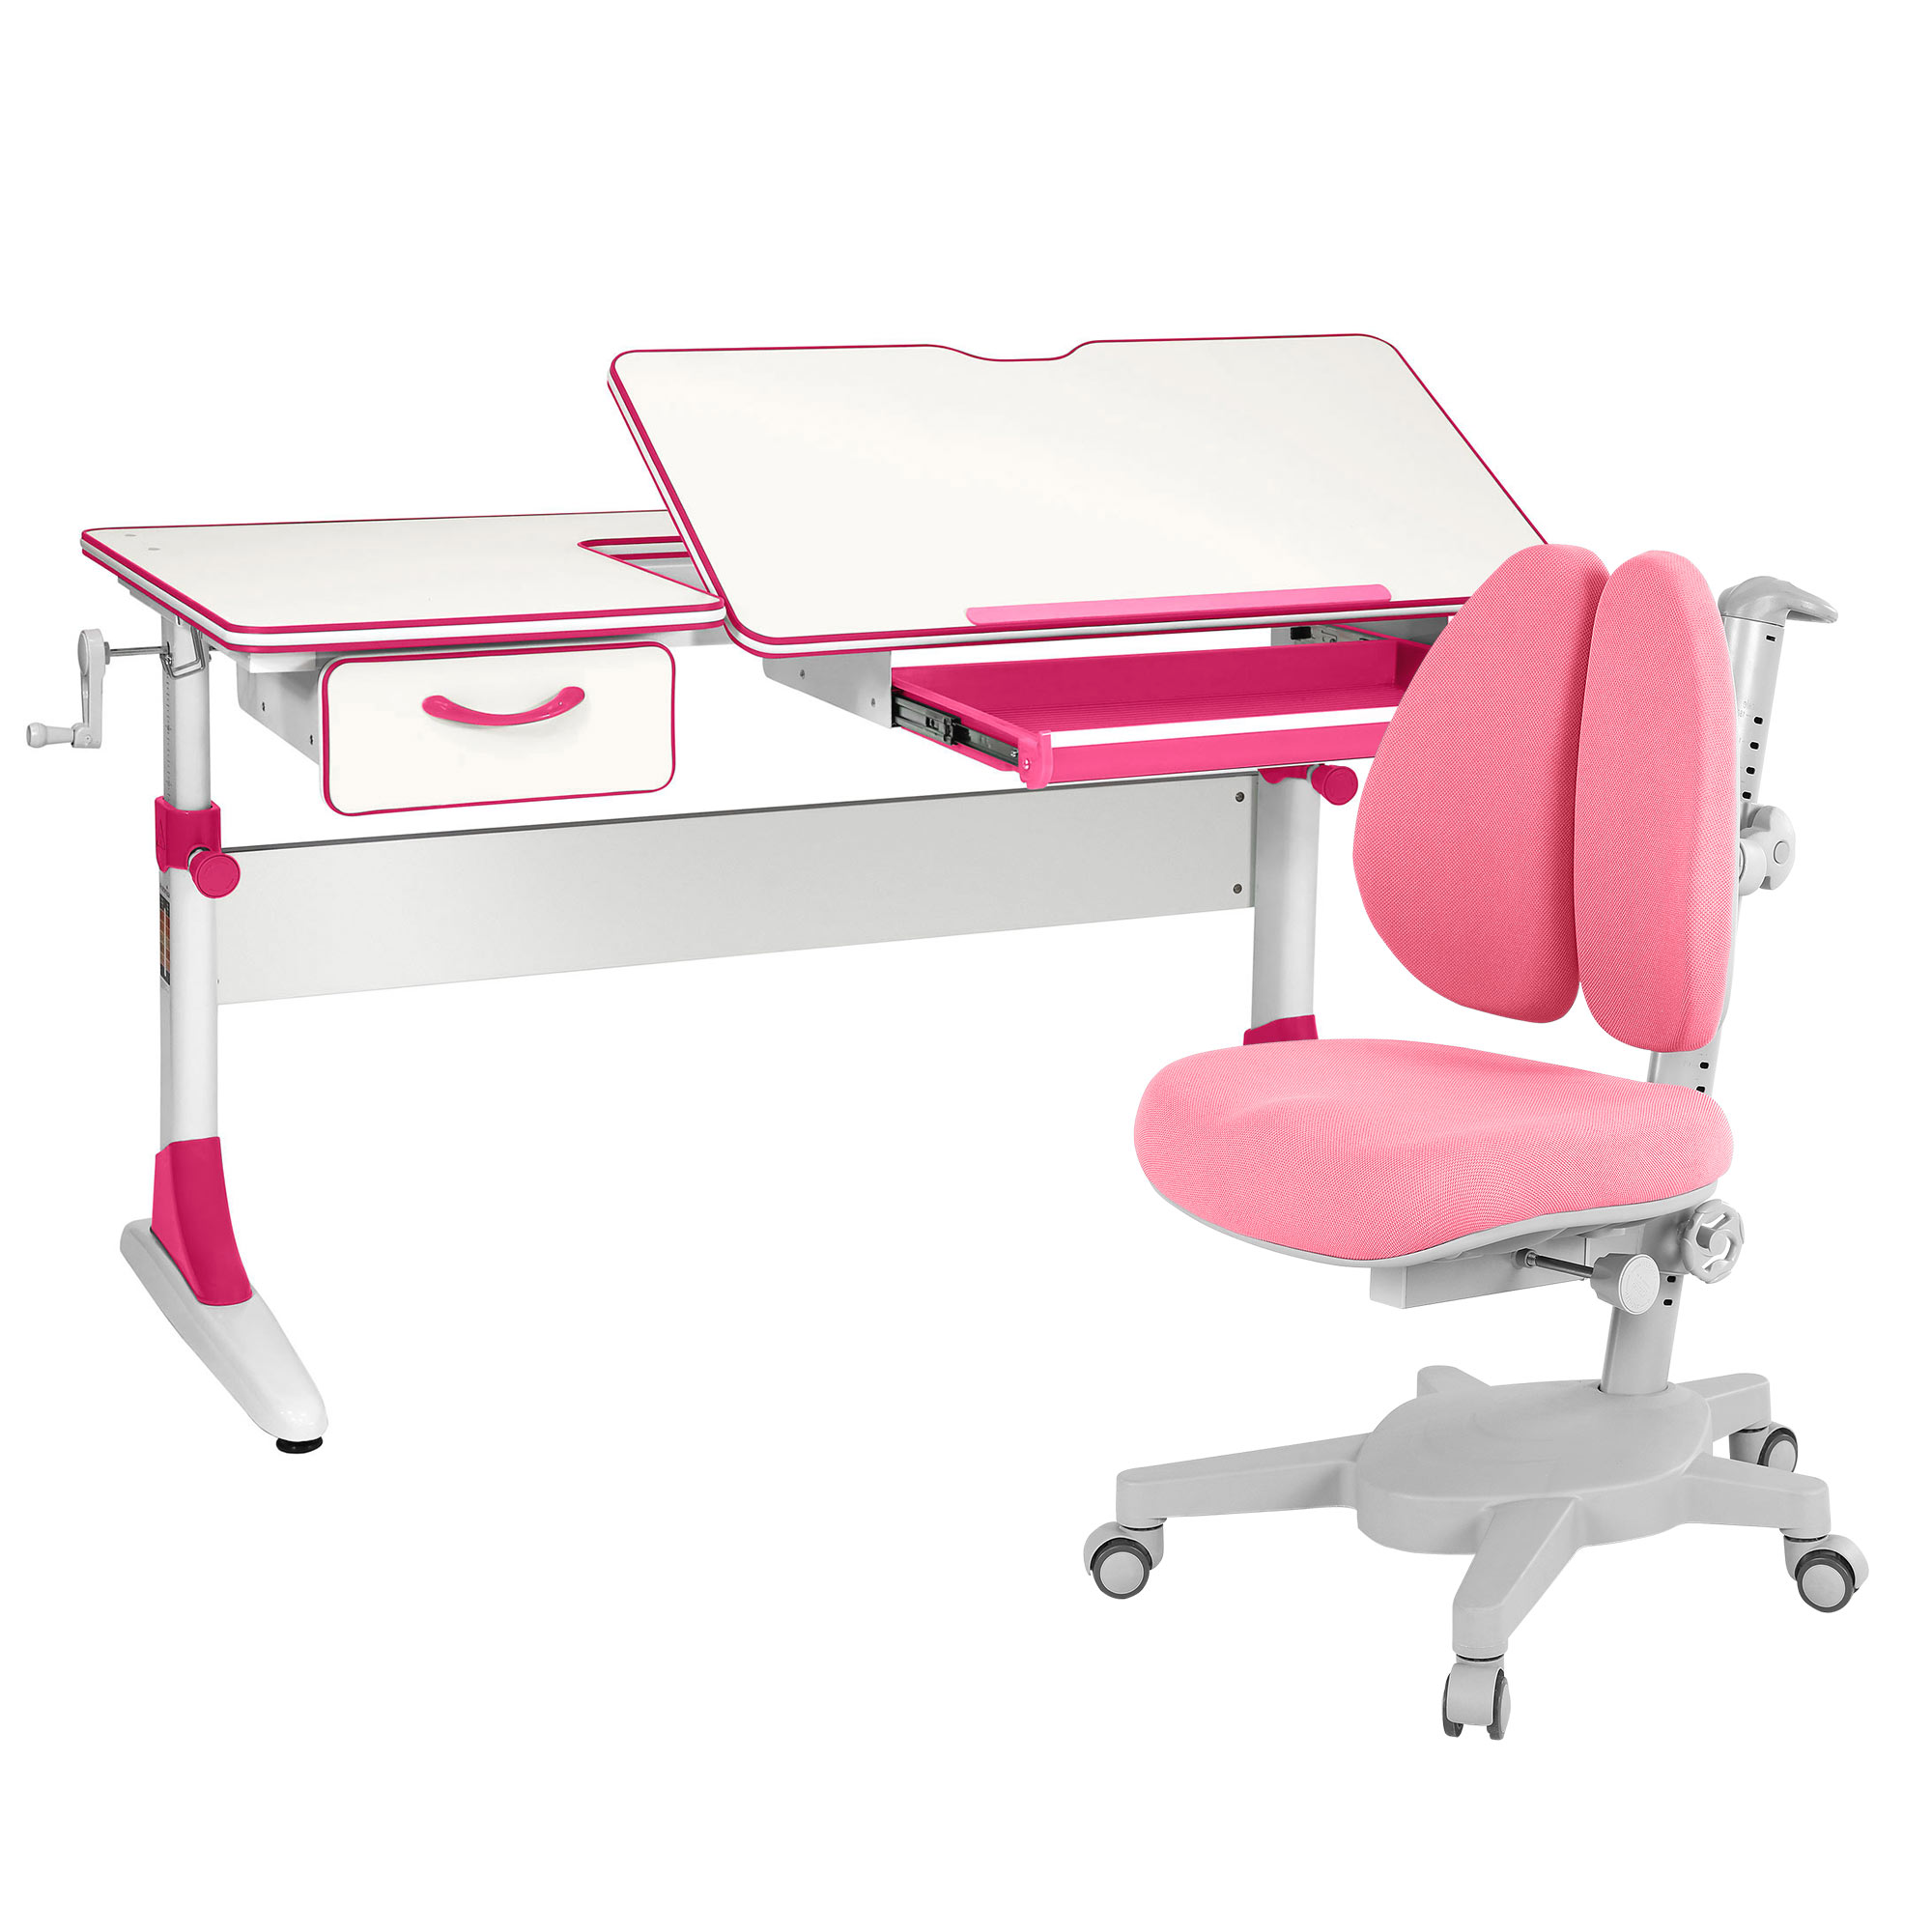 Комплект парта Anatomica Study-120 белый, розовый с розовым креслом Armata Duos комплект парта anatomica study 100 белый розовый с розовым креслом figra